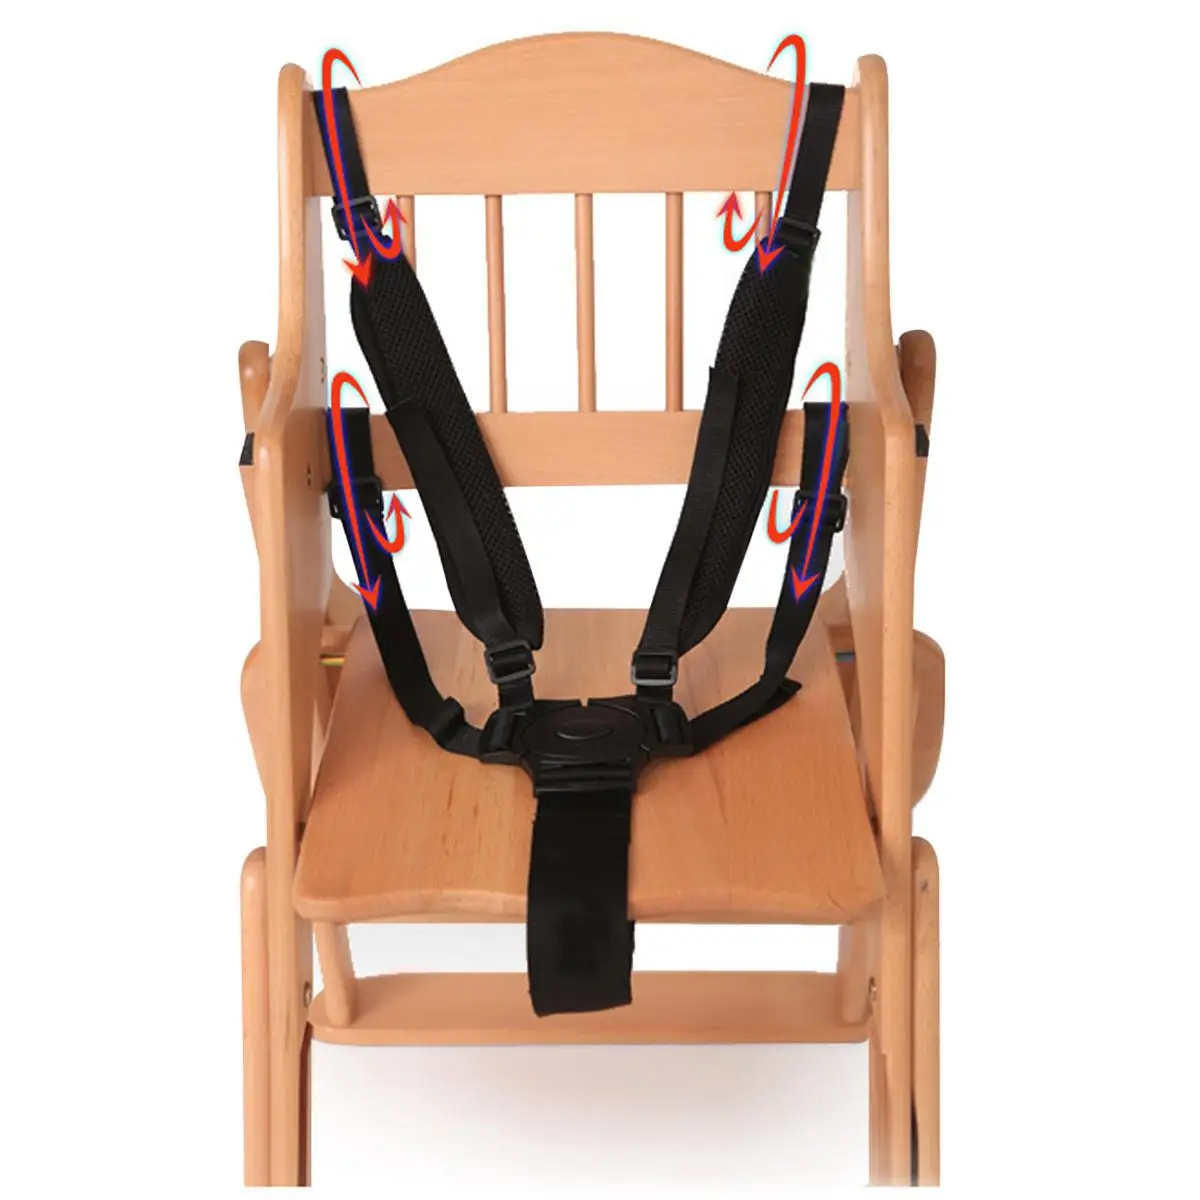 

Универсальное Детское 5 точечные ремни безопасности, безопасный ремень для ремней безопасности для коляски детский стульчик коляска детск...